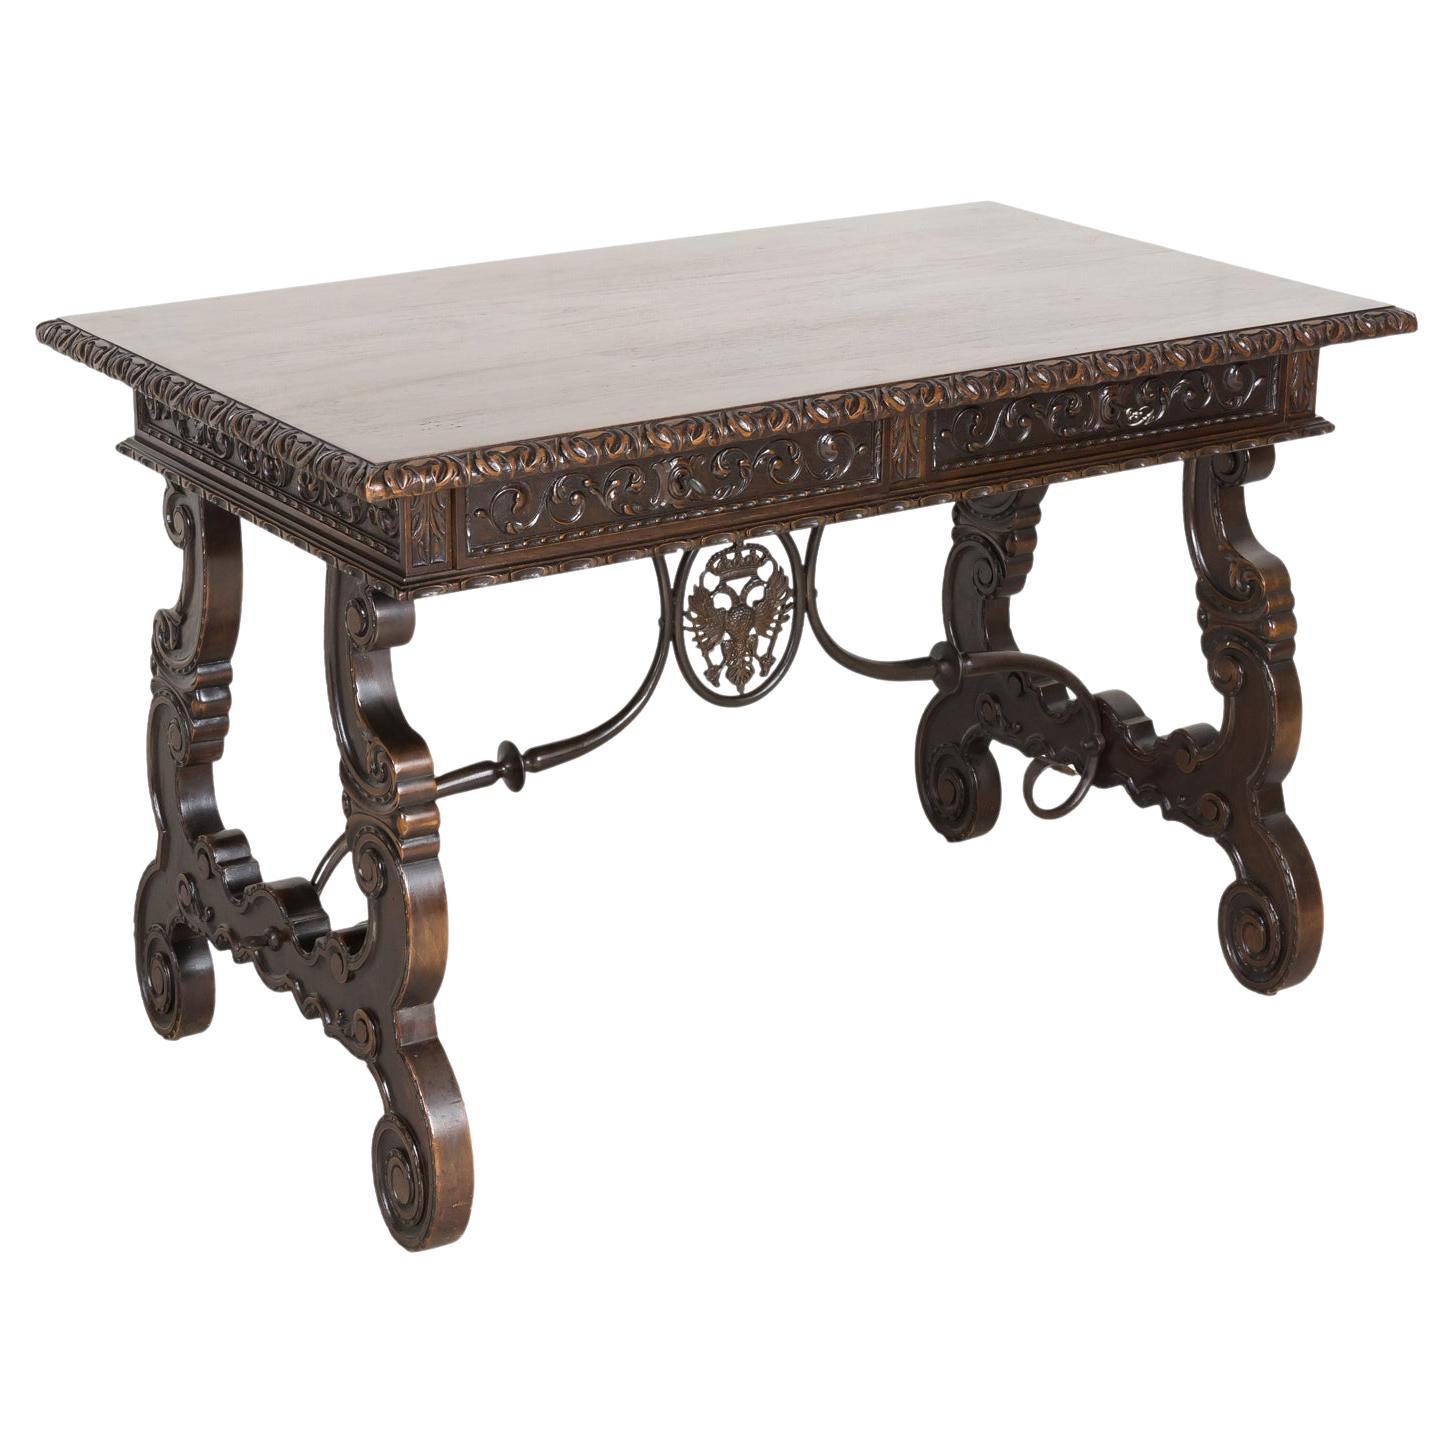 Table d'écriture ou table d'appoint de style baroque espagnol du 19ème siècle à pieds en forme de lyre en noyer